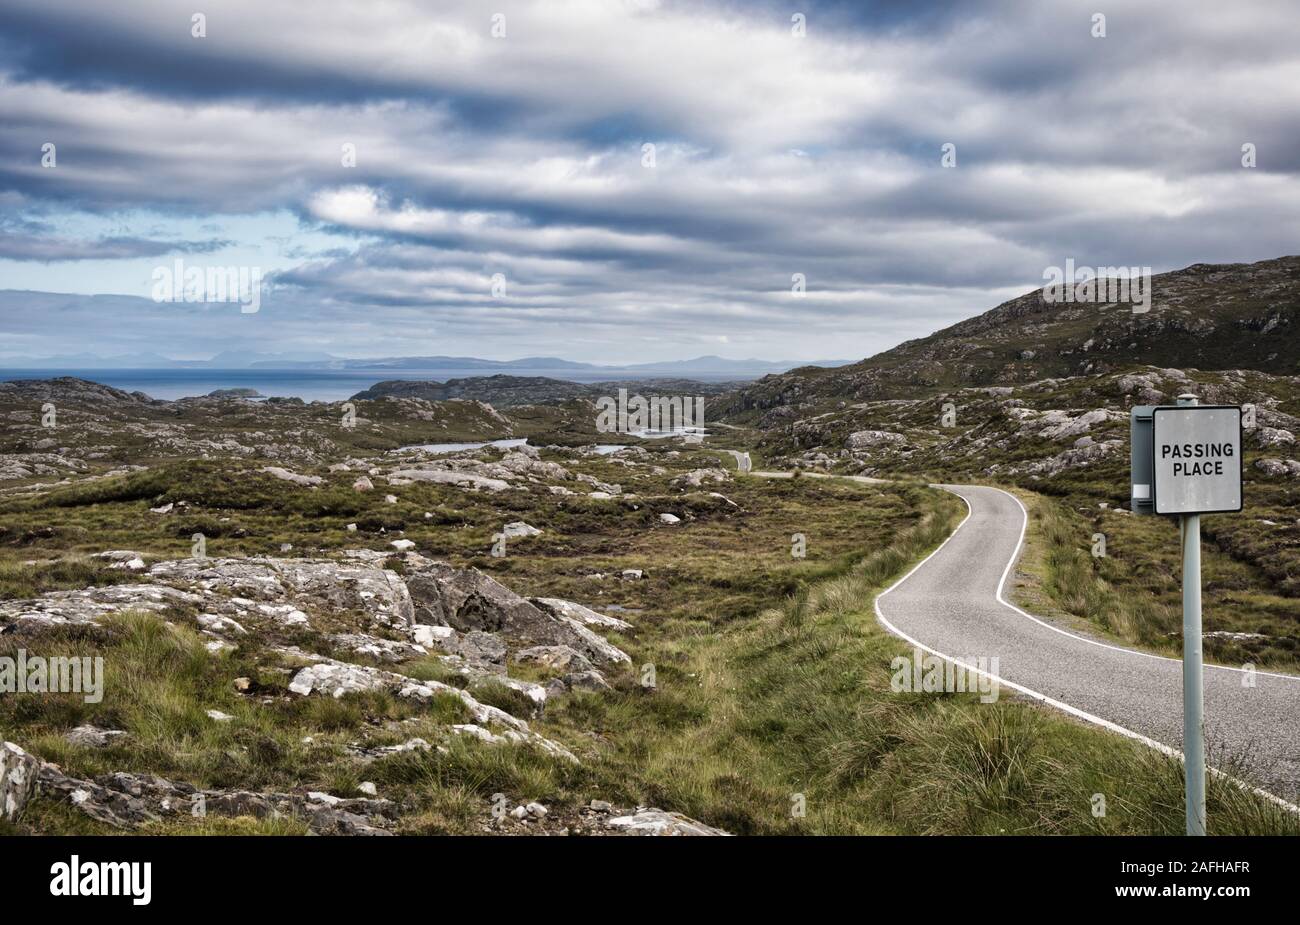 Pase el cartel de Place en la remota carretera de un solo carril entre un paisaje estéril en la isla de Lewis y Harris, Outer Hebrides, Escocia Foto de stock